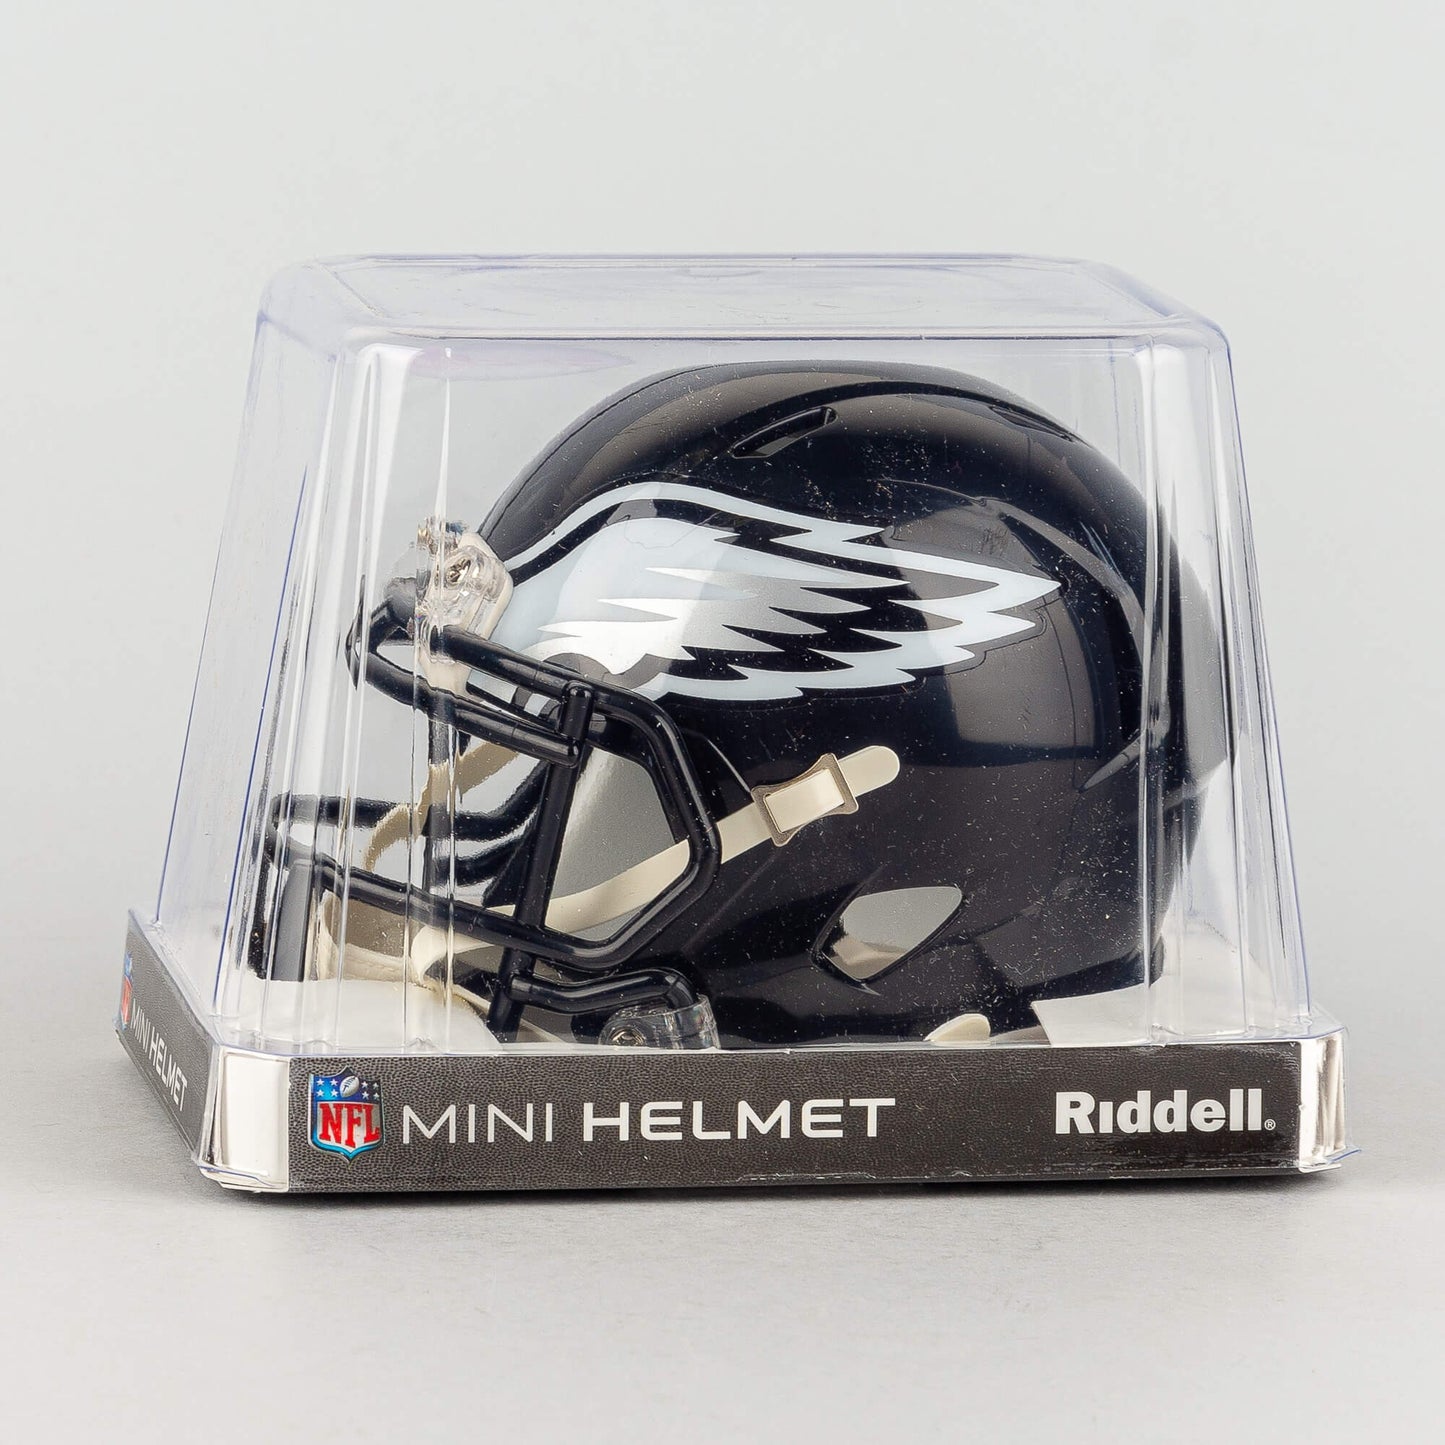 Riddell OFA Speed Mini Helmet Philadelphia Eagles